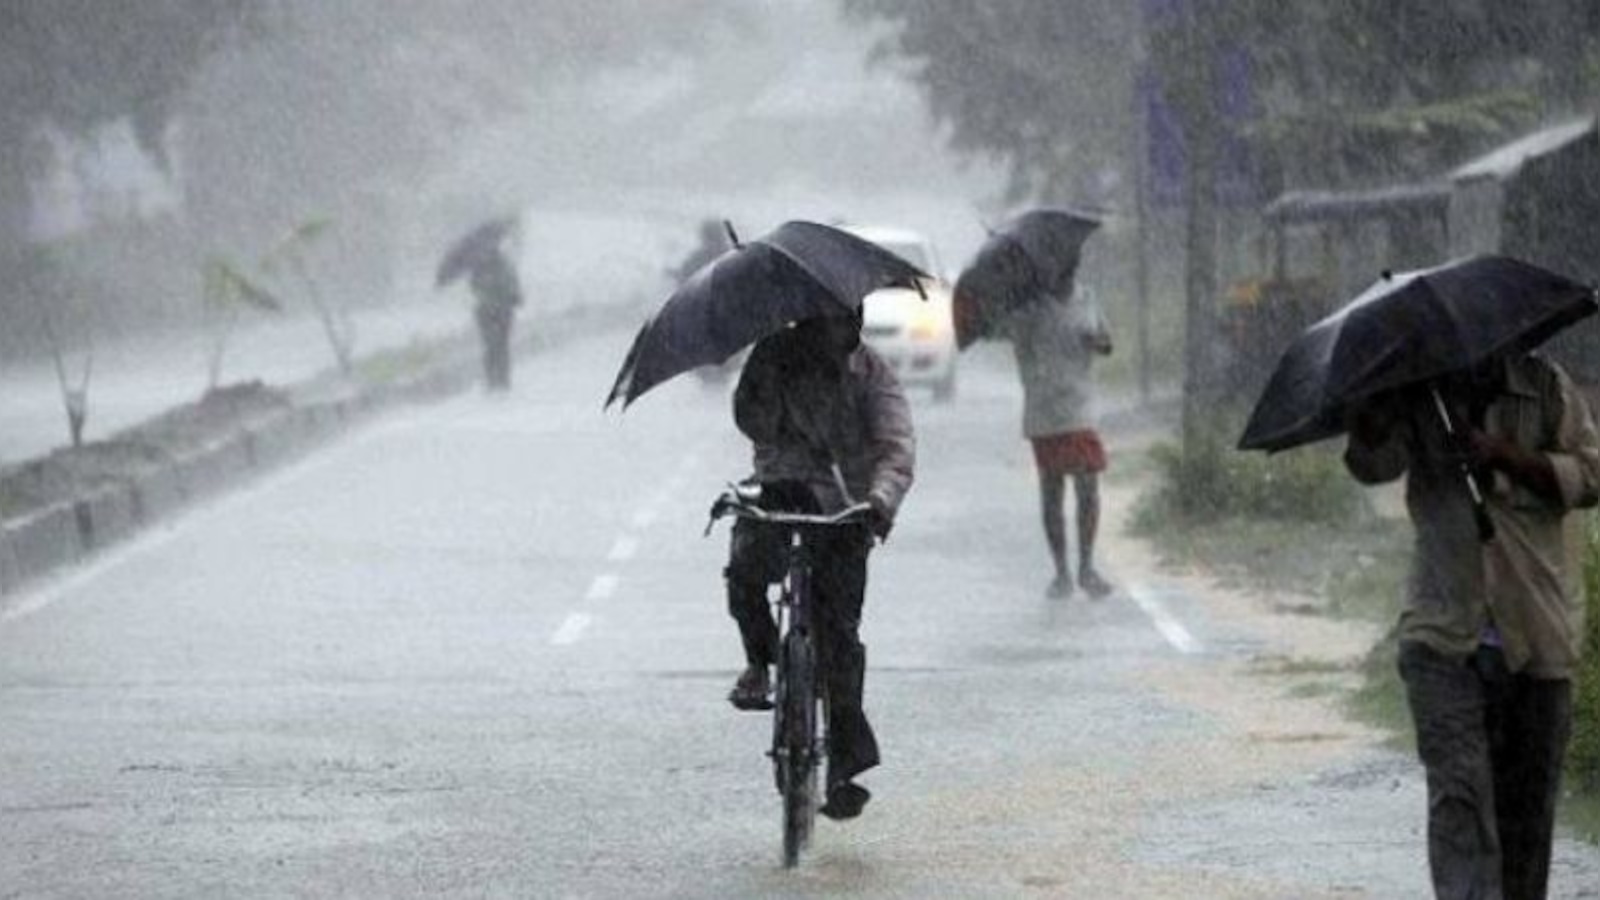 ಇಡೀ ರಾಜ್ಯಕ್ಕೆ ವ್ಯಾಪಿಸಿದ ಮುಂಗಾರು: ವಾಡಿಕೆಗಿಂತ ಹೆಚ್ಚು ಮಳೆ | More rain than usual in Karnataka after Monsoon enter